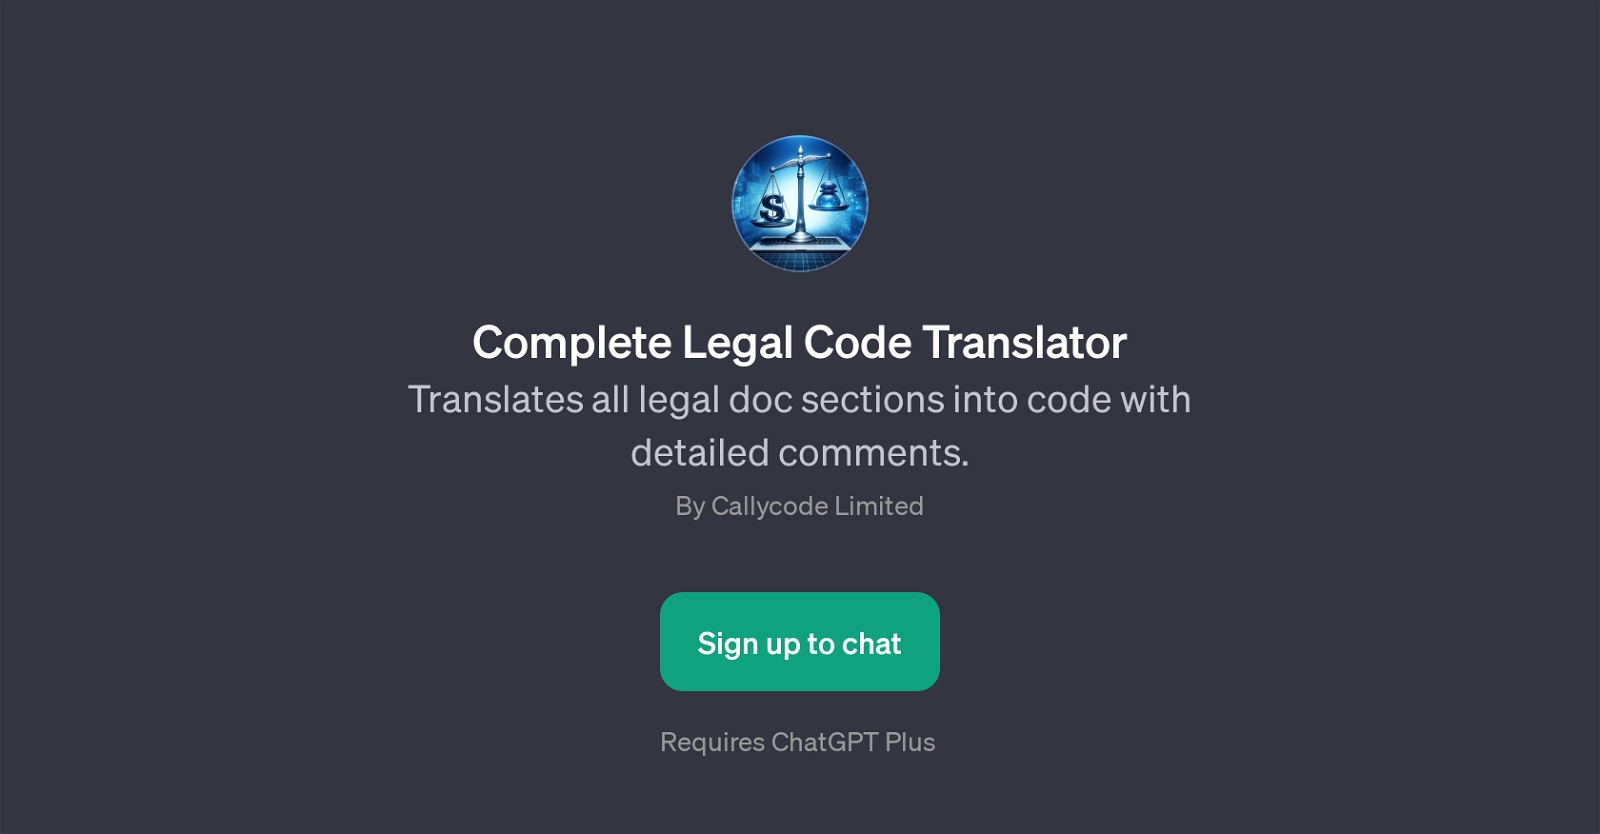 Complete Legal Code Translator website